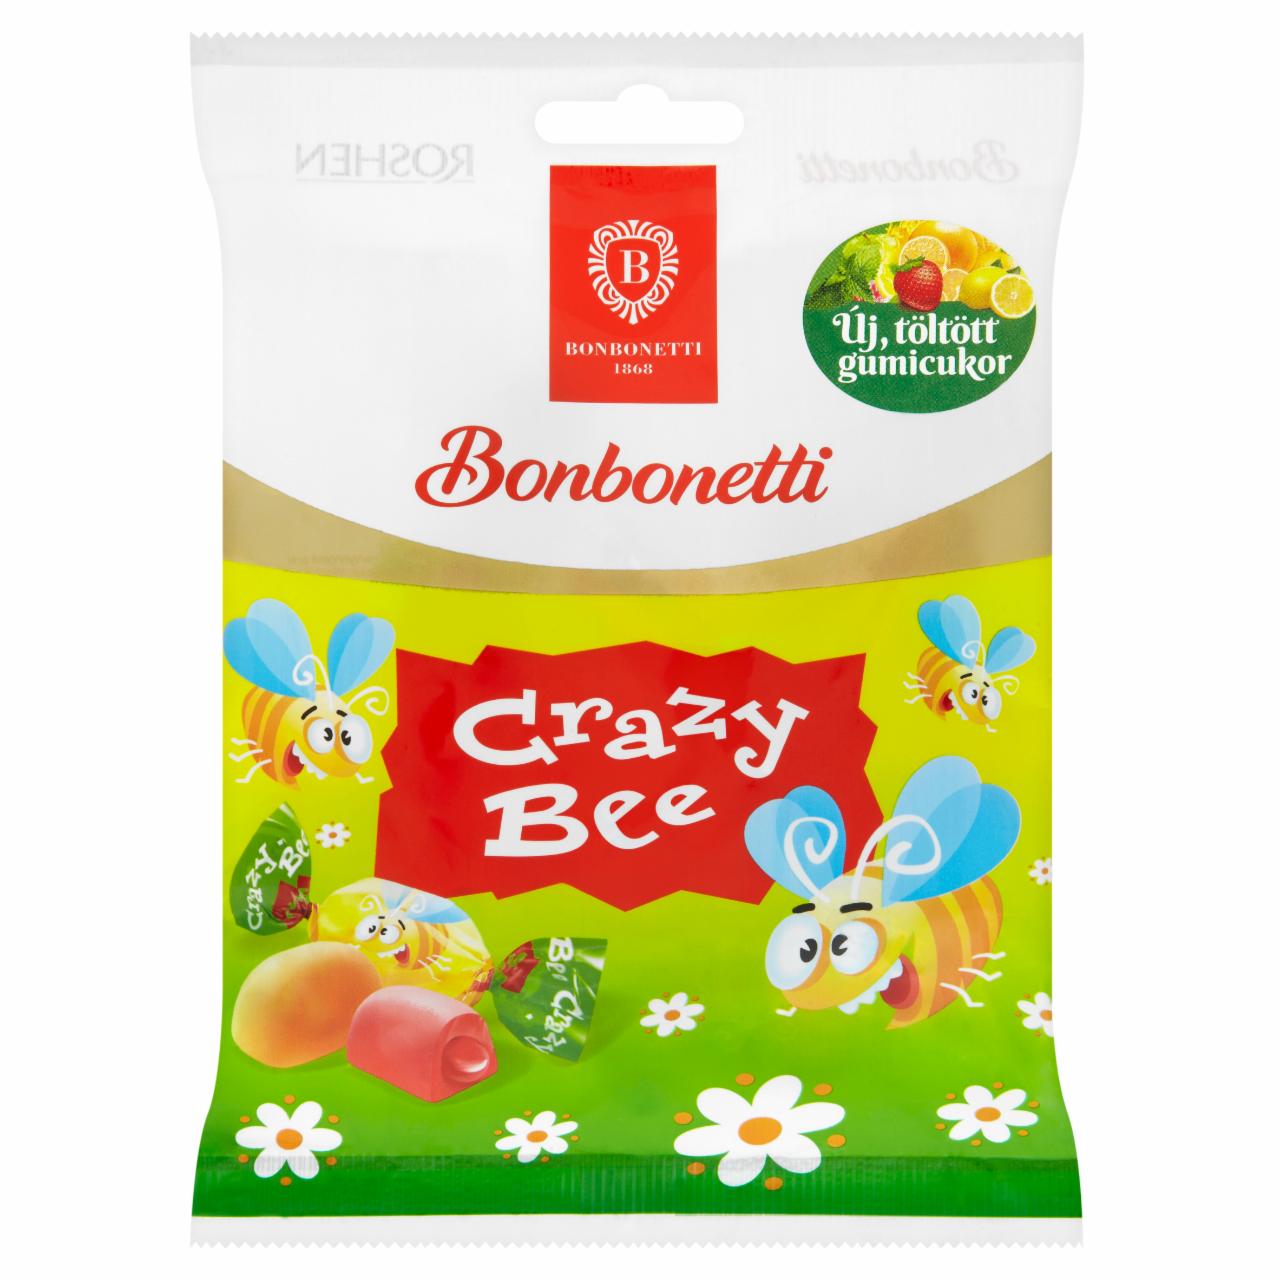 Képek - Bonbonetti Crazy Bee vegyes gyümölcs ízesítésű gumicukorkák 80 g